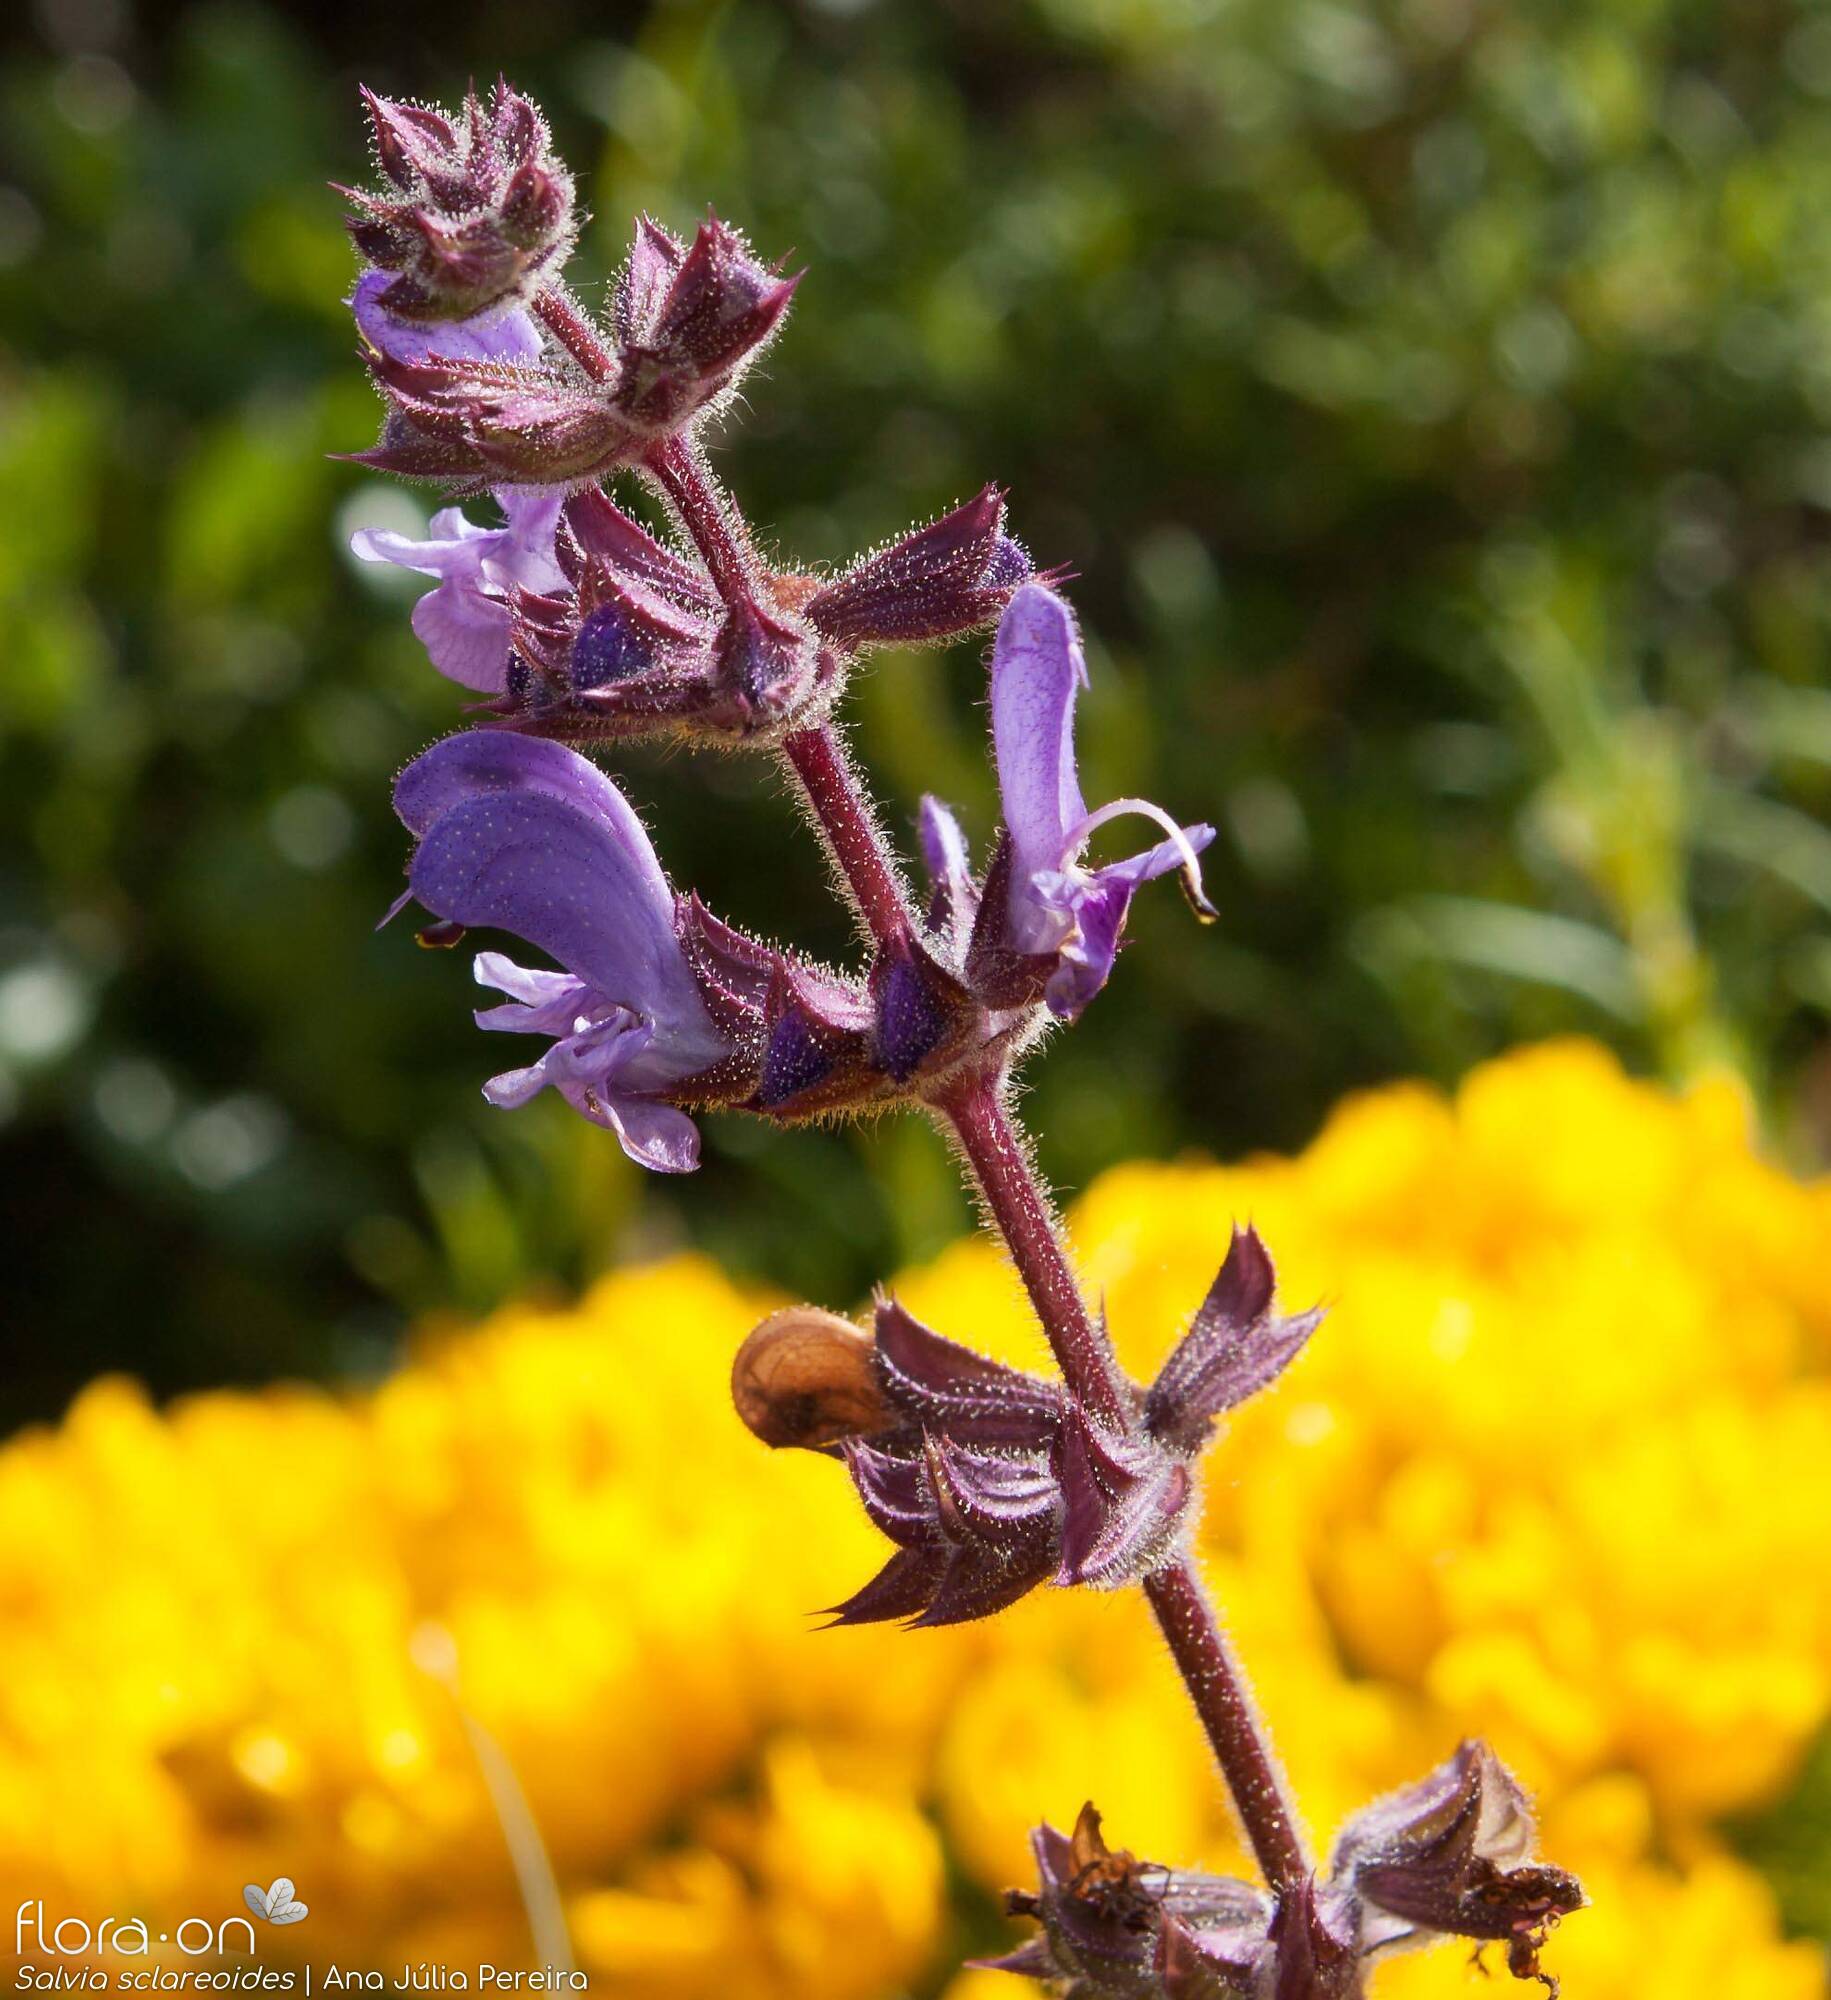 Salvia sclareoides - Flor (geral) | Ana Júlia Pereira; CC BY-NC 4.0